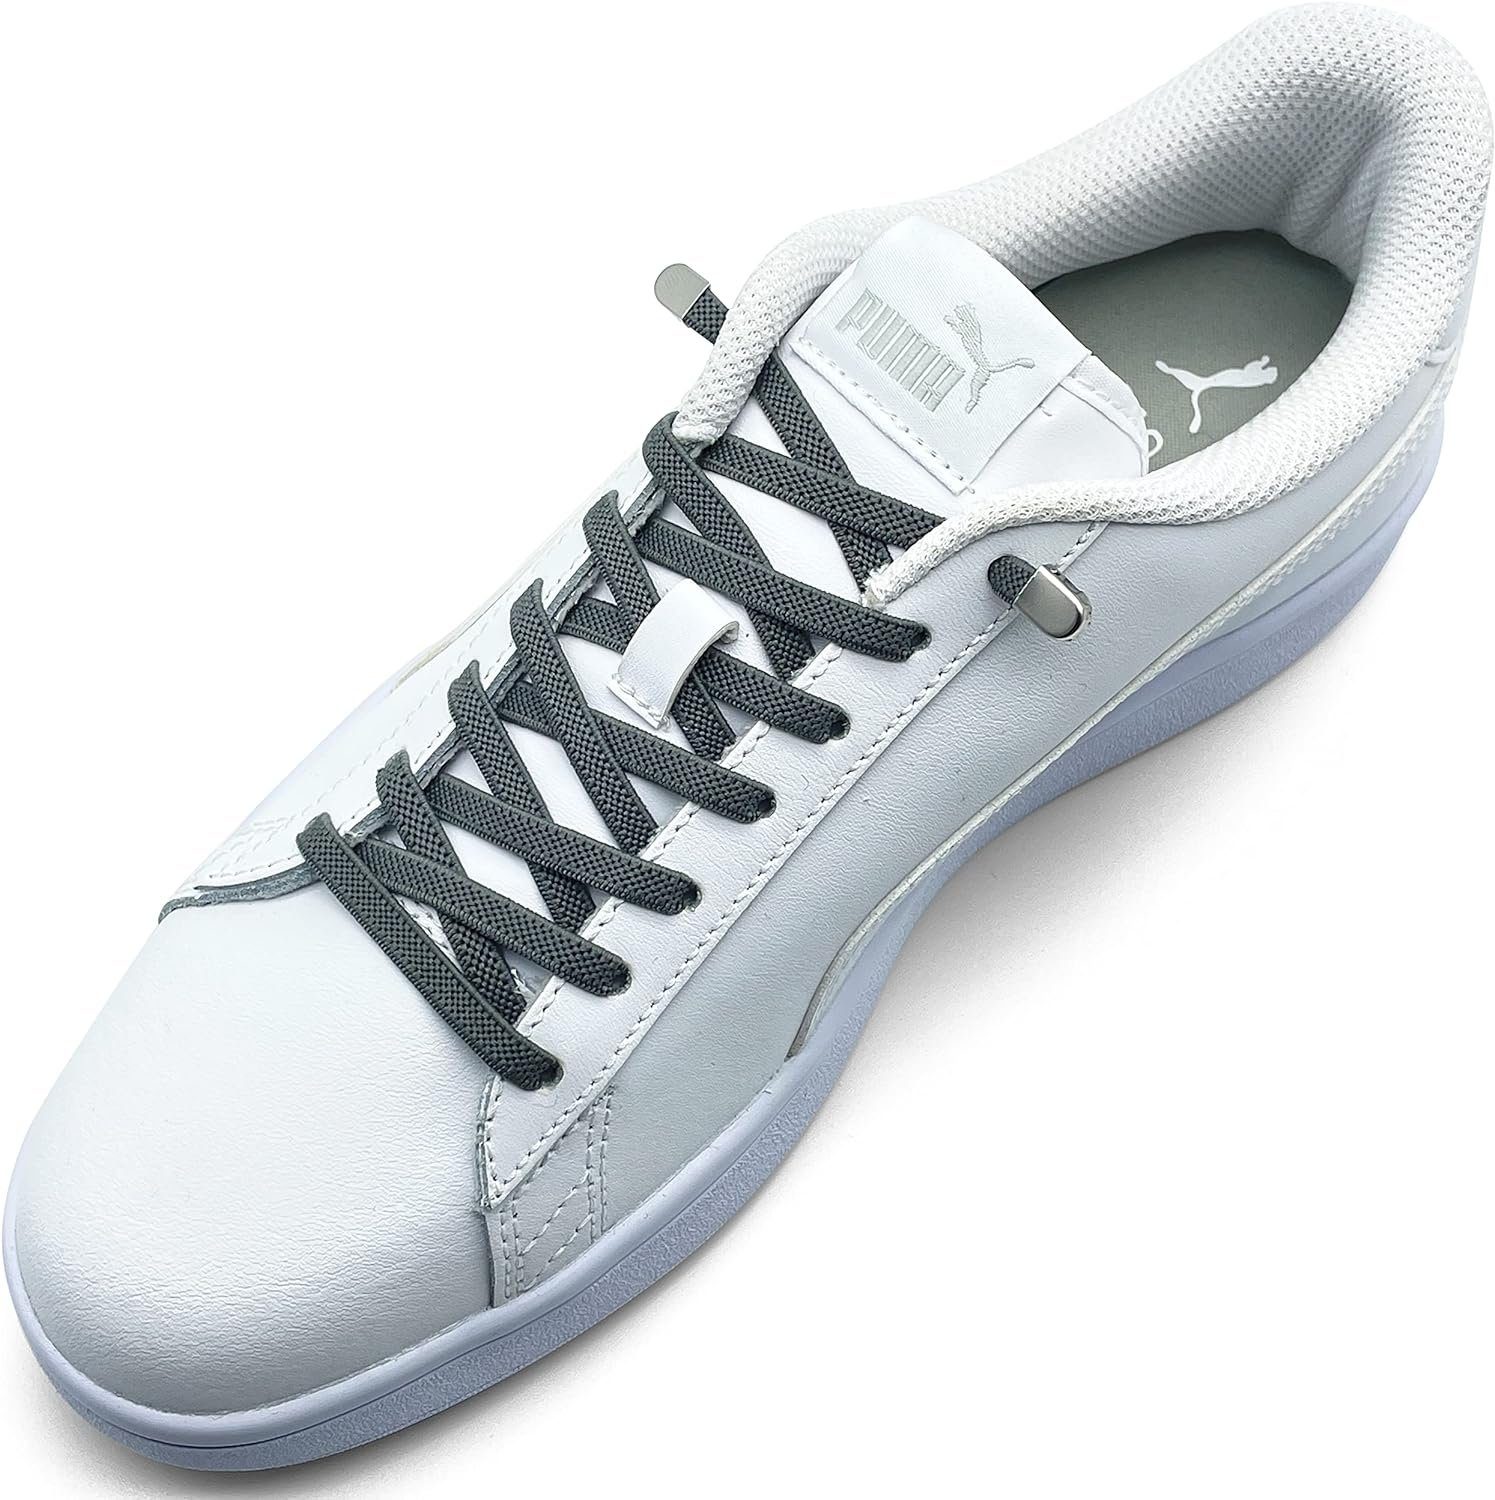 ELANOX Schnürsenkel 4 Stück für 2 Paar Schuhe elastische Schnürsenkel mit Clips, inkl. Enden (Clips) - 8 St. in silber anthracite